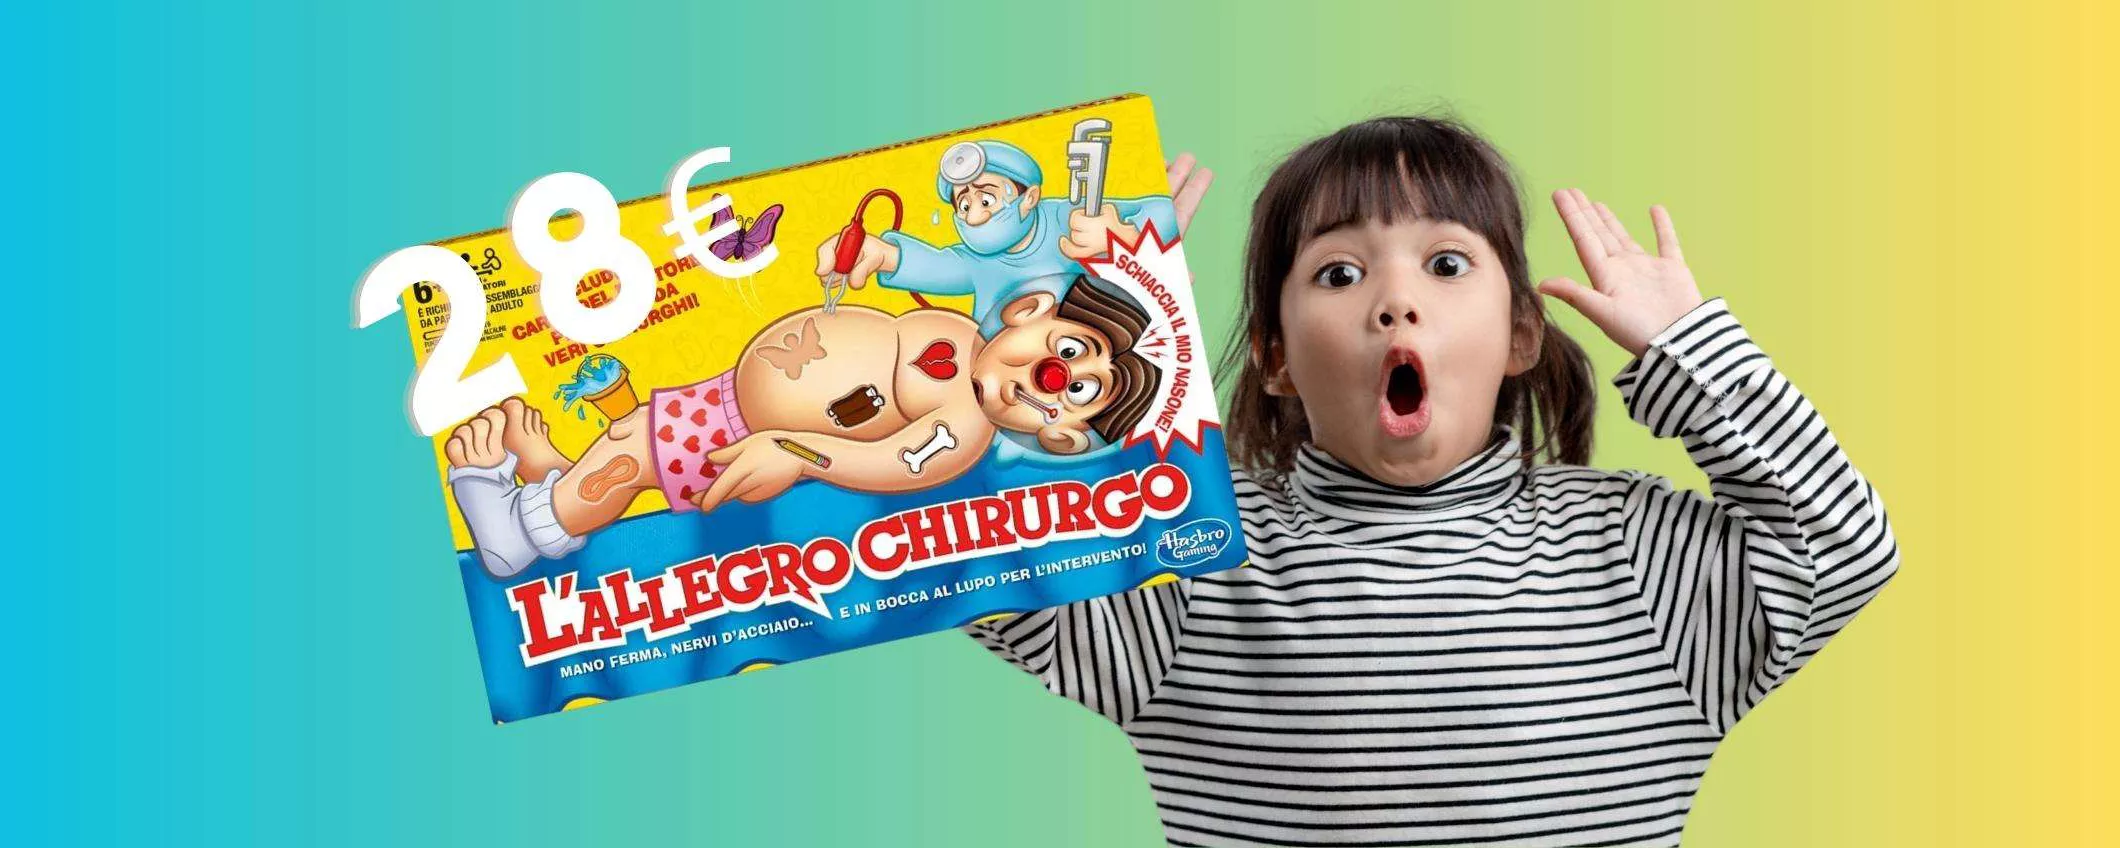 L'Allegro Chirurgo: gioco divertente per grandi e piccoli in OFFERTA a 28€